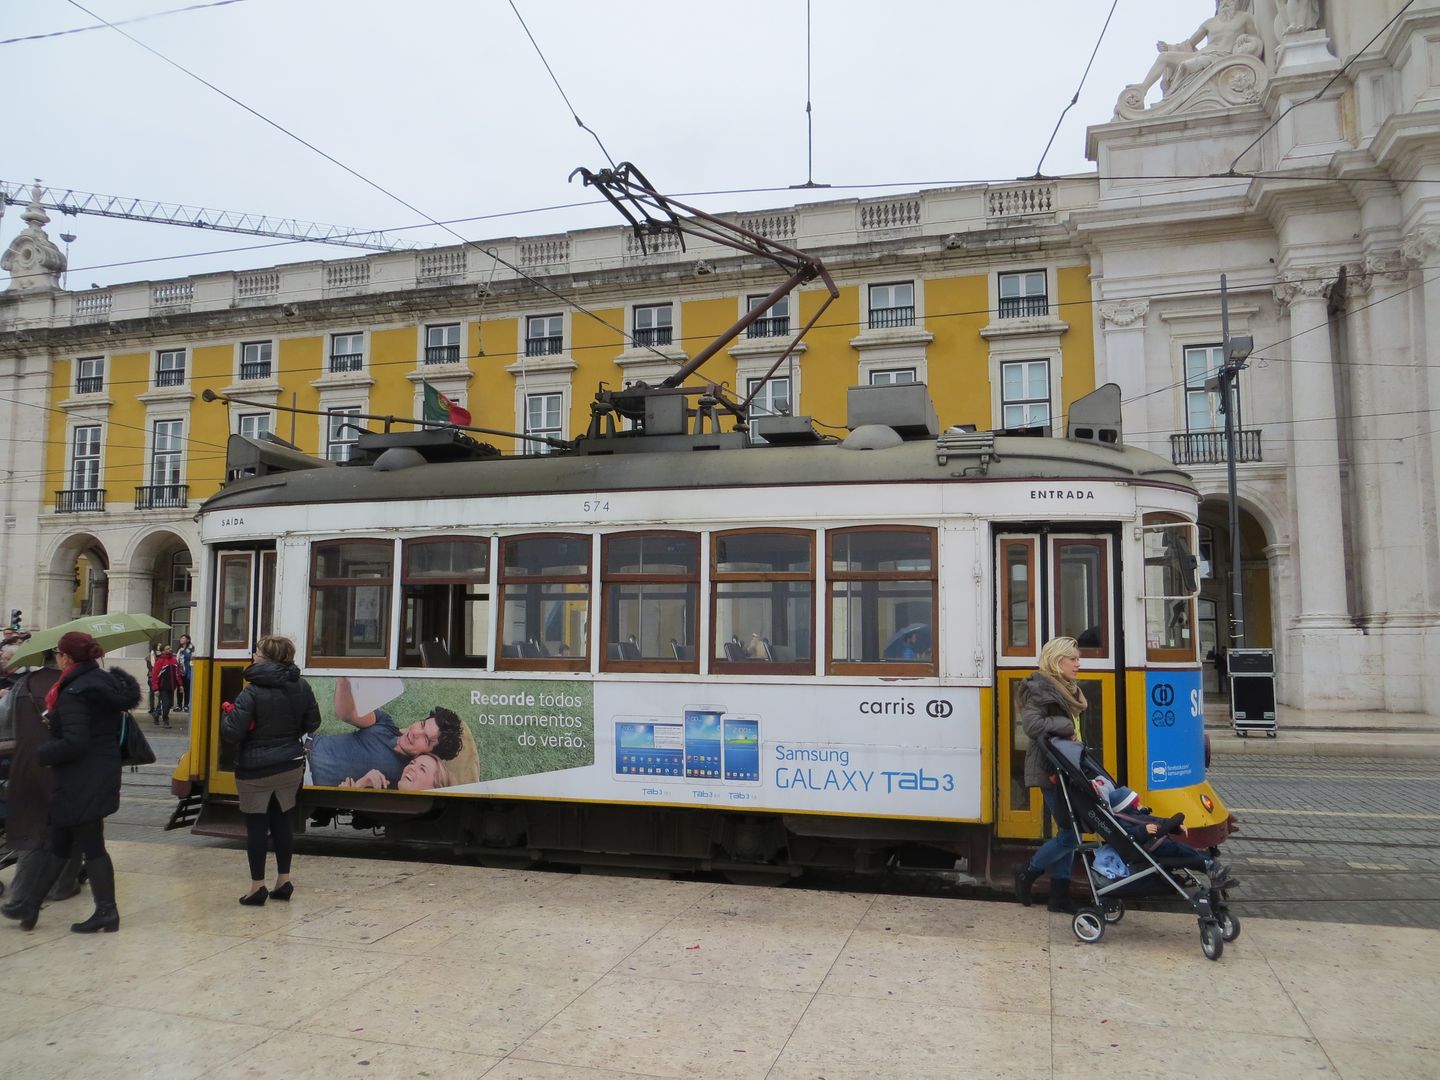 Фотографии Португалии. Лиссабон. Январь 2014